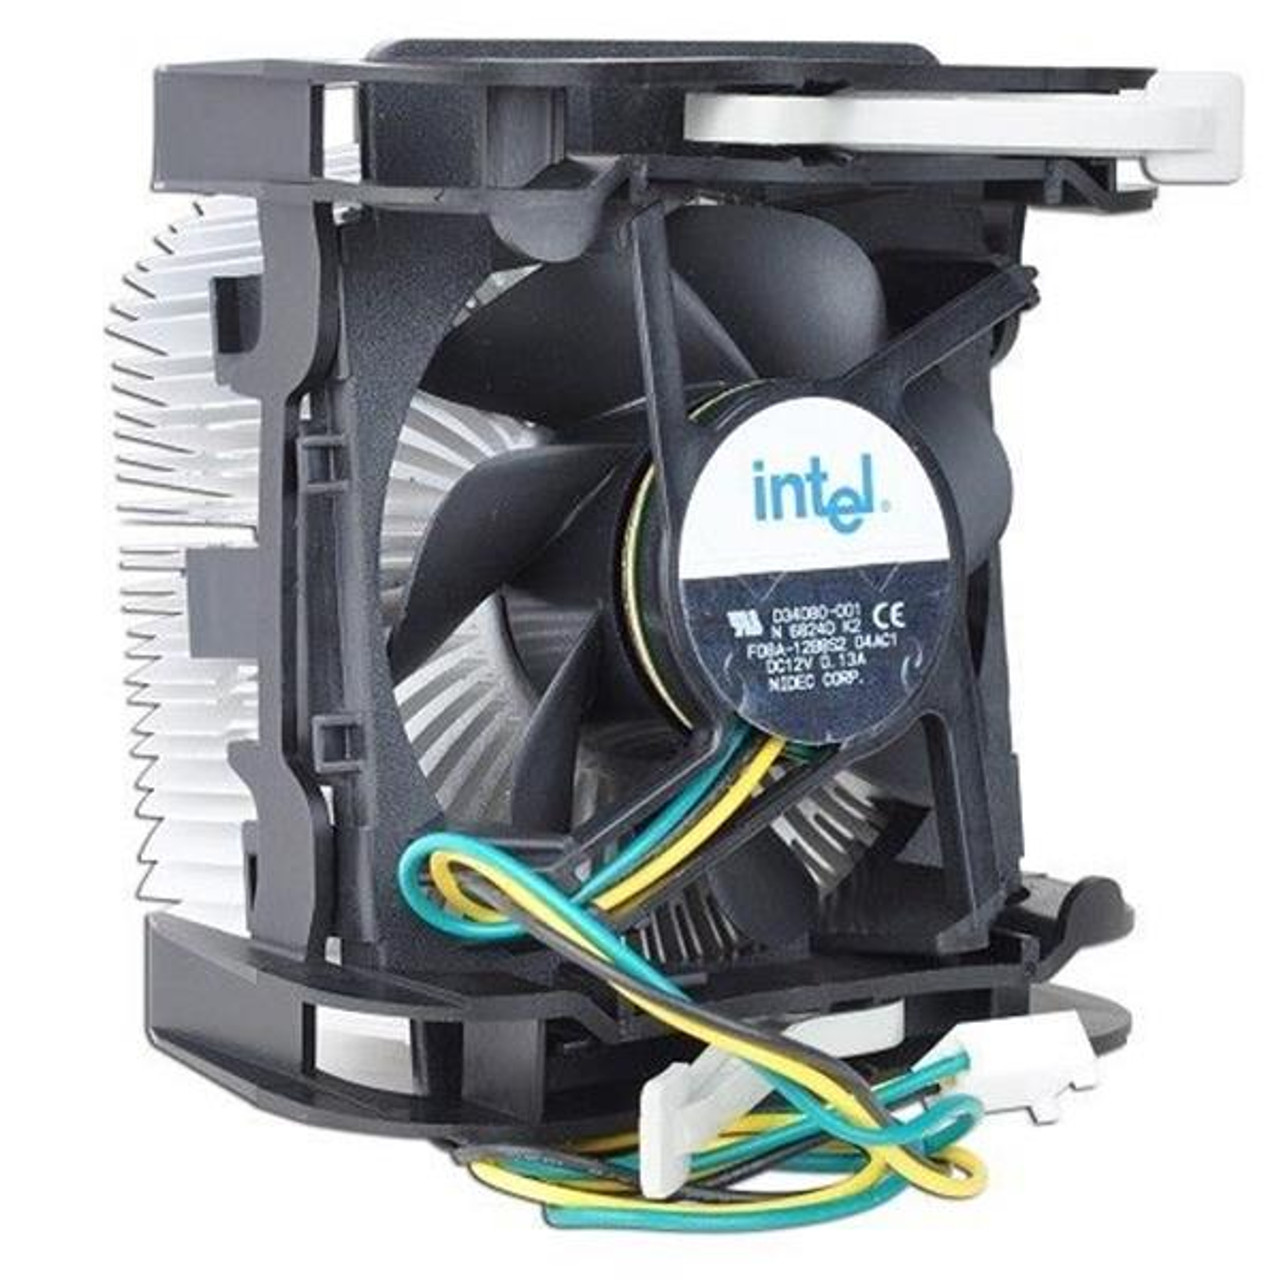 C92538-002 Intel Heat Sink / Fan Assembly